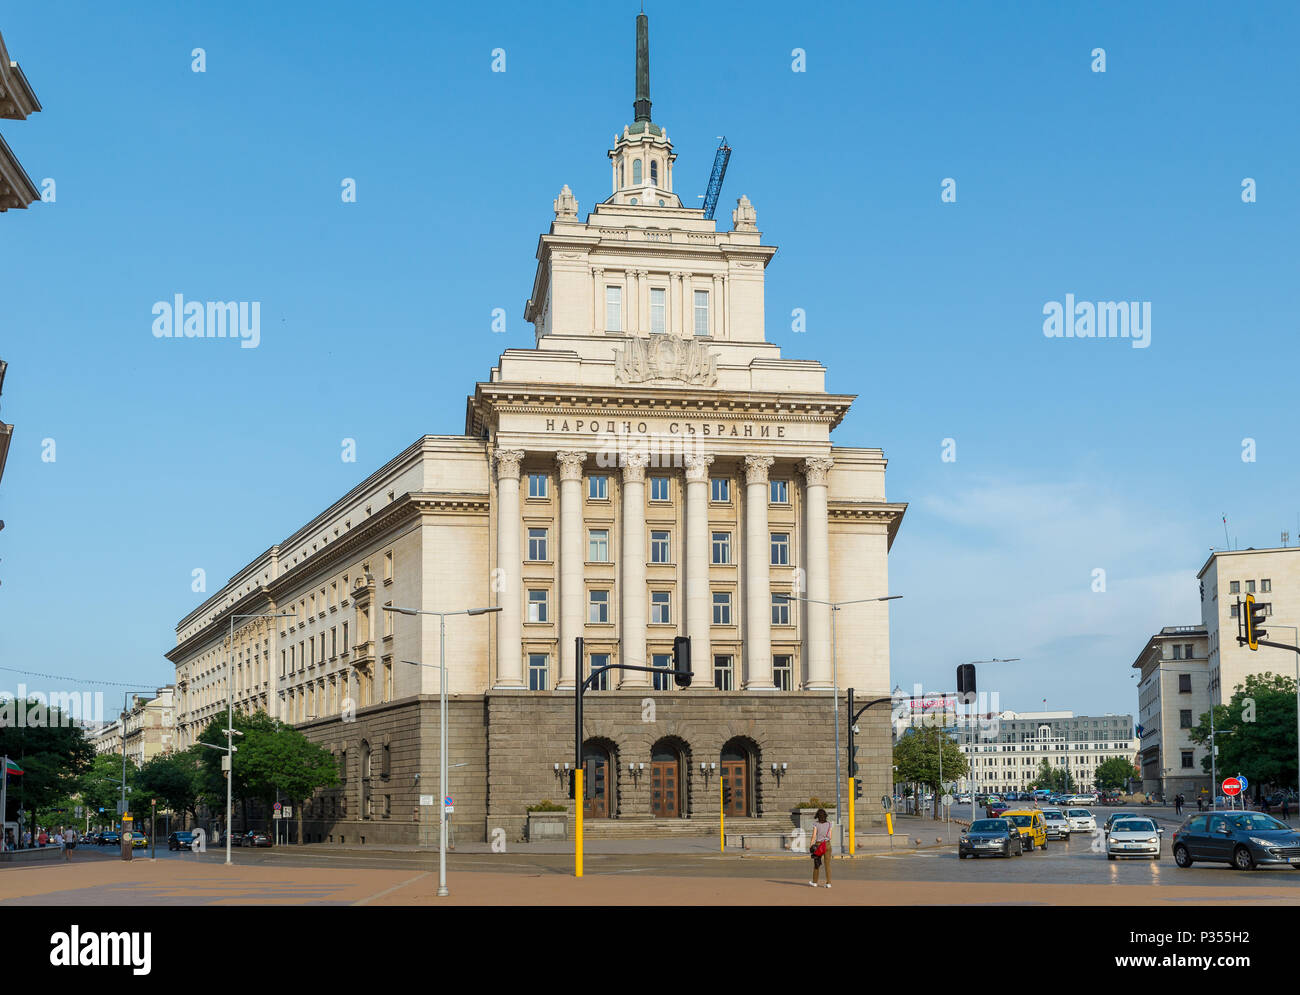 SOFIA, BULGARIA - 7 giugno 2018: Il Largo è un insieme architettonico di tre classicismo socialista gli edifici nel centro di Sofia, la capitale di Bulgari Foto Stock